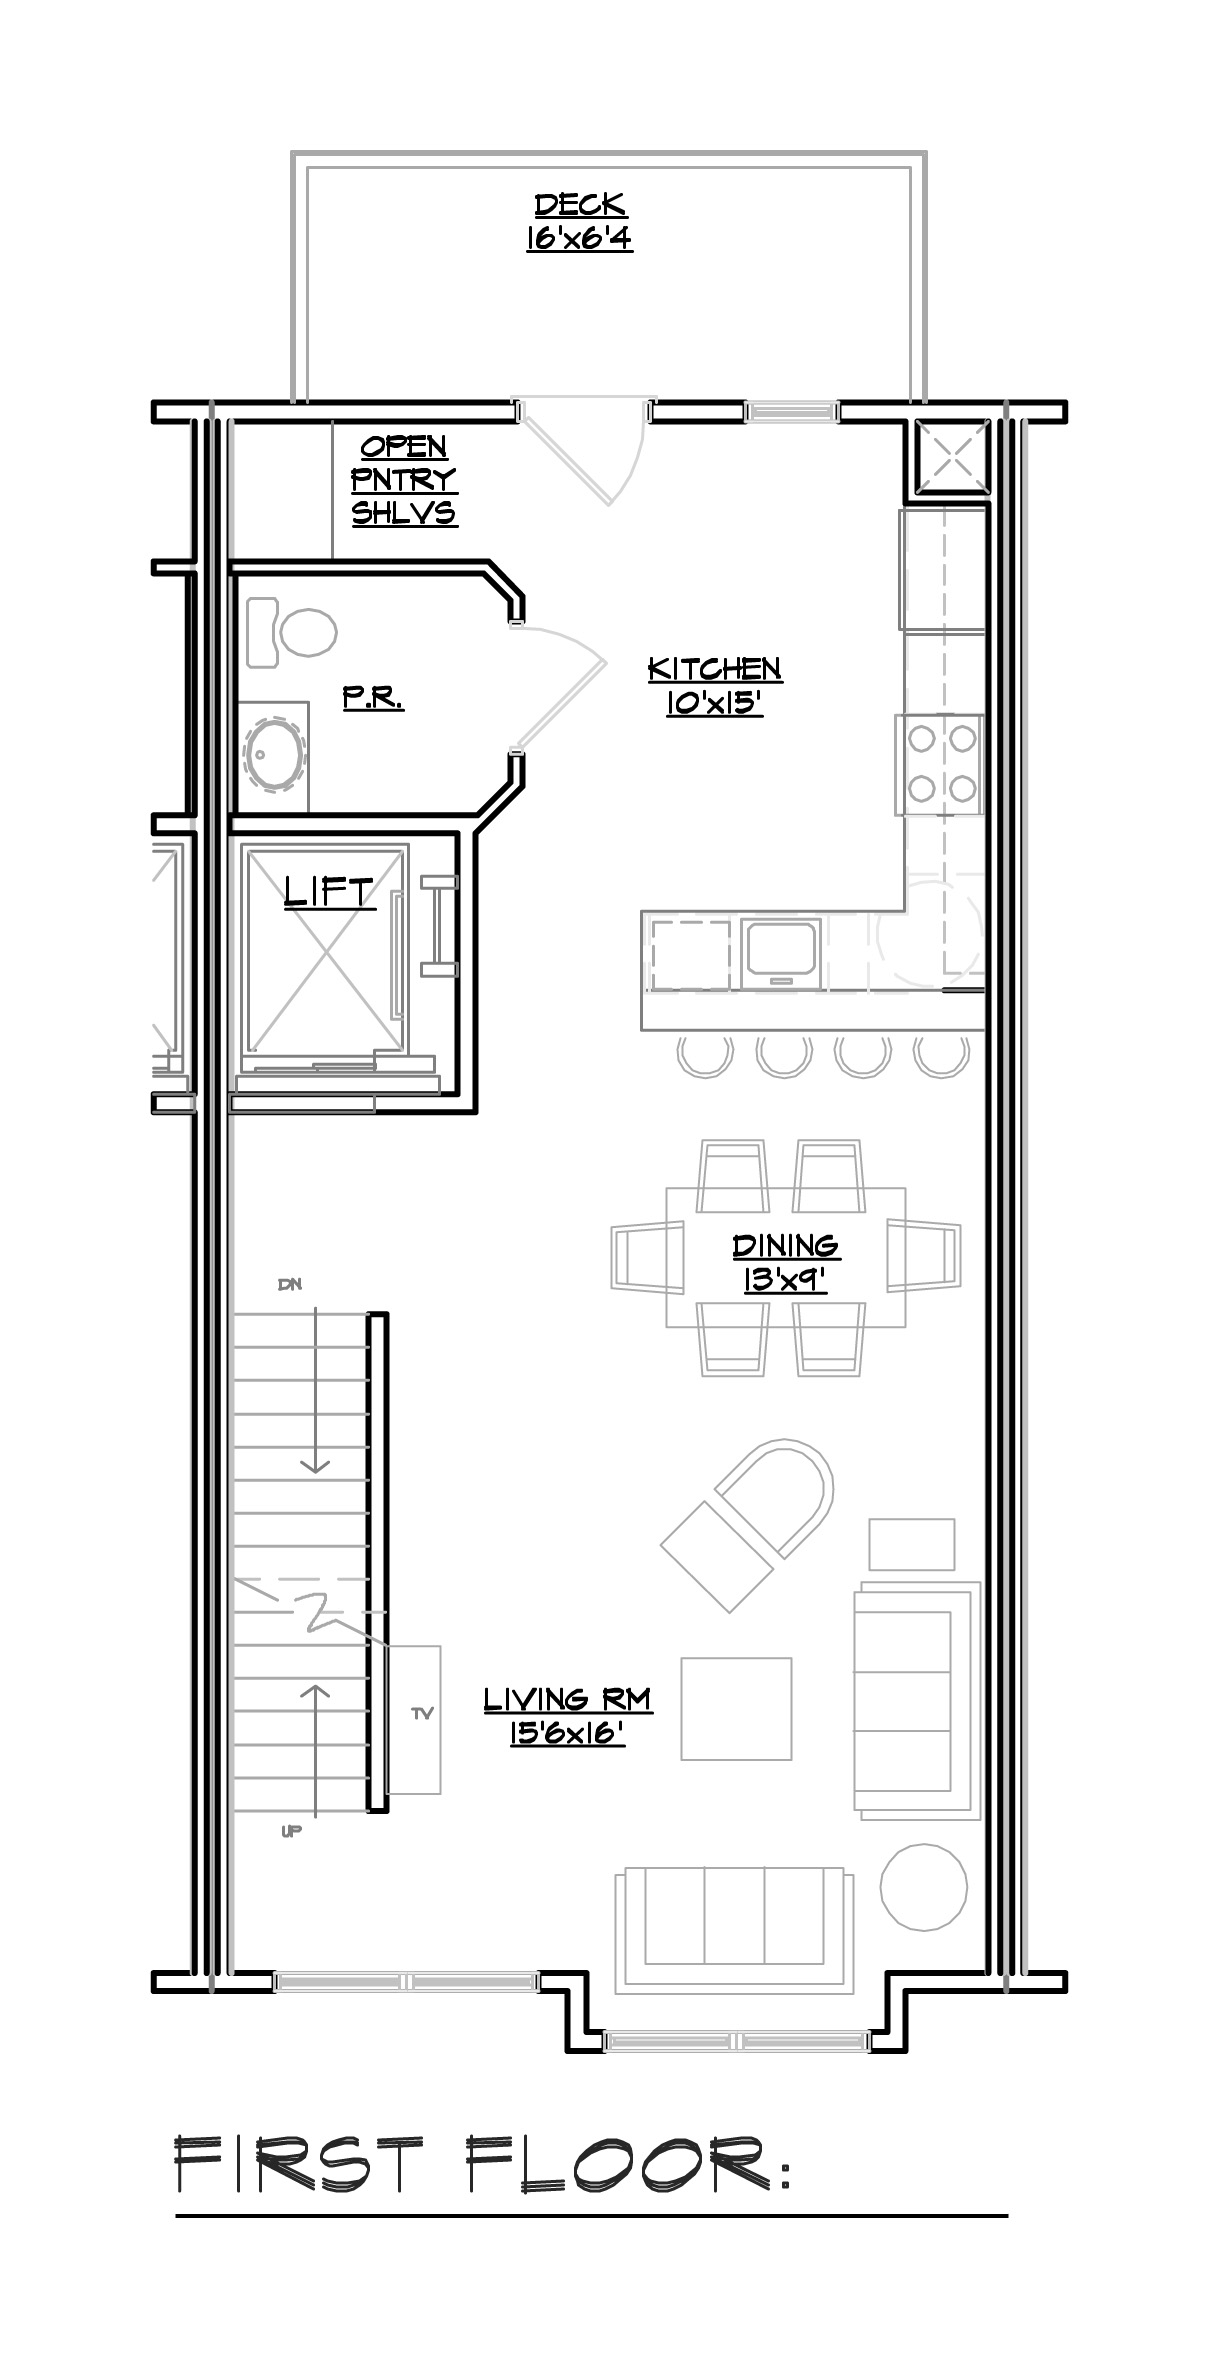 Floor Plans - F HNDCP - LHV.jpg